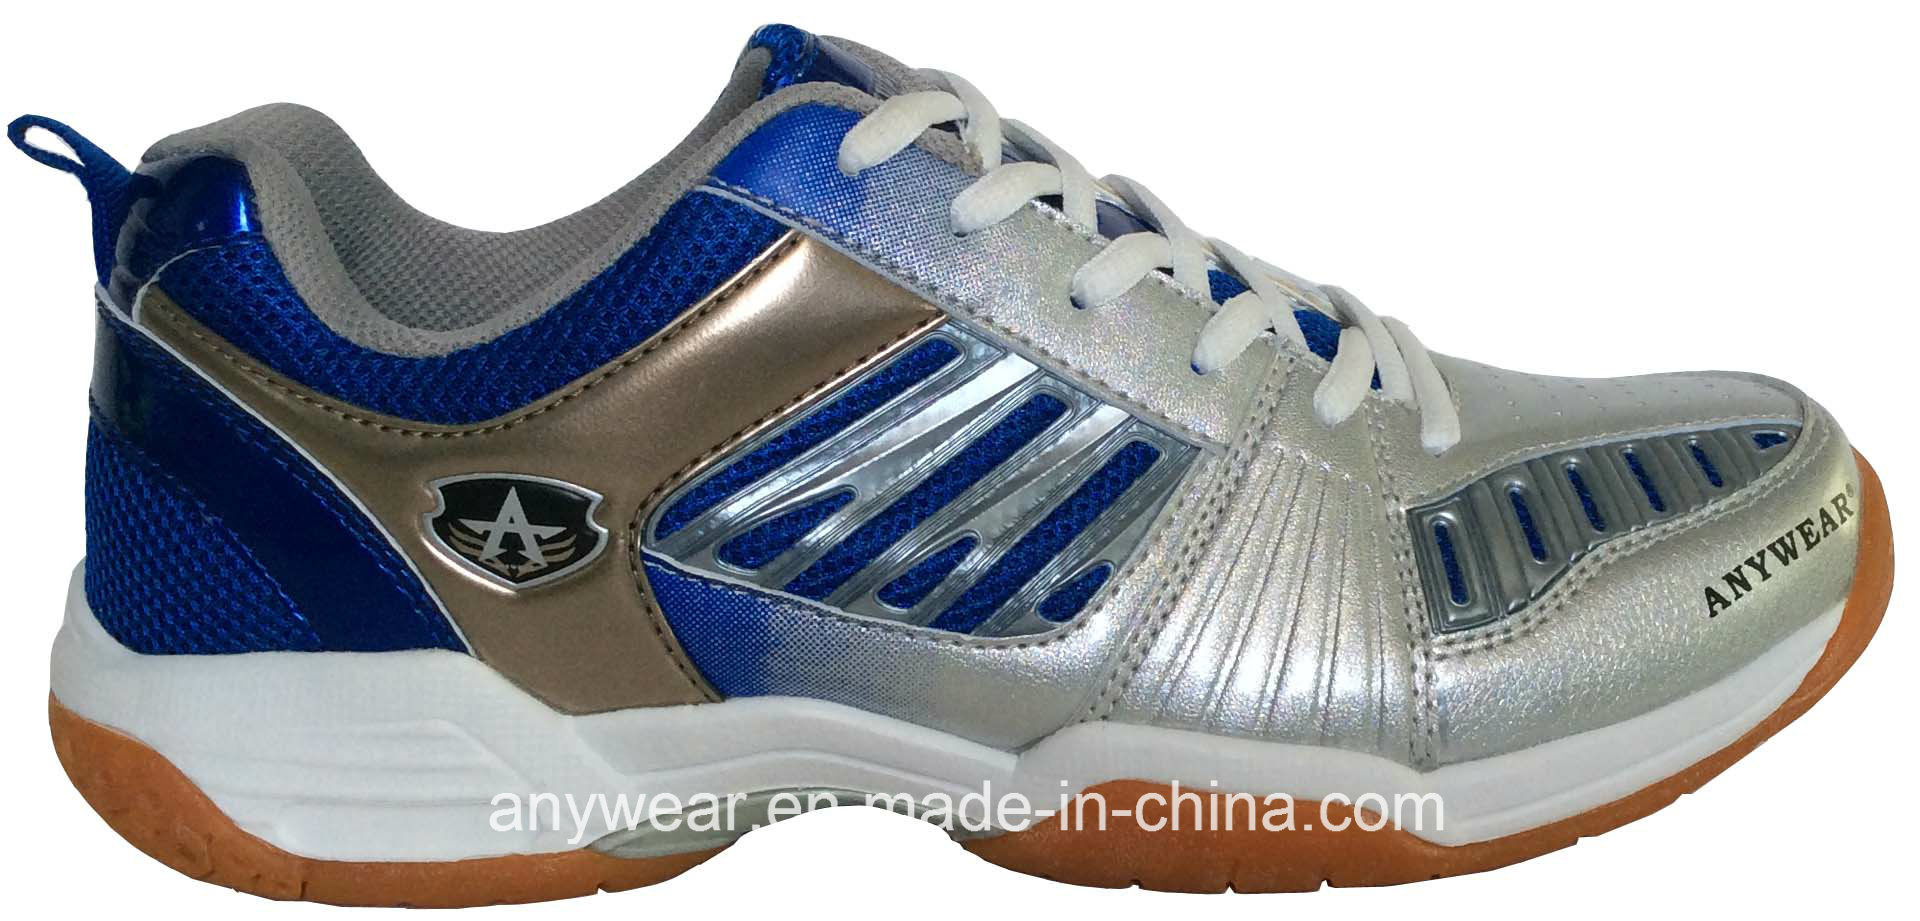 Men's Sports Squash Table Tennis Footwear Badminton Court Shoes (815-9113)